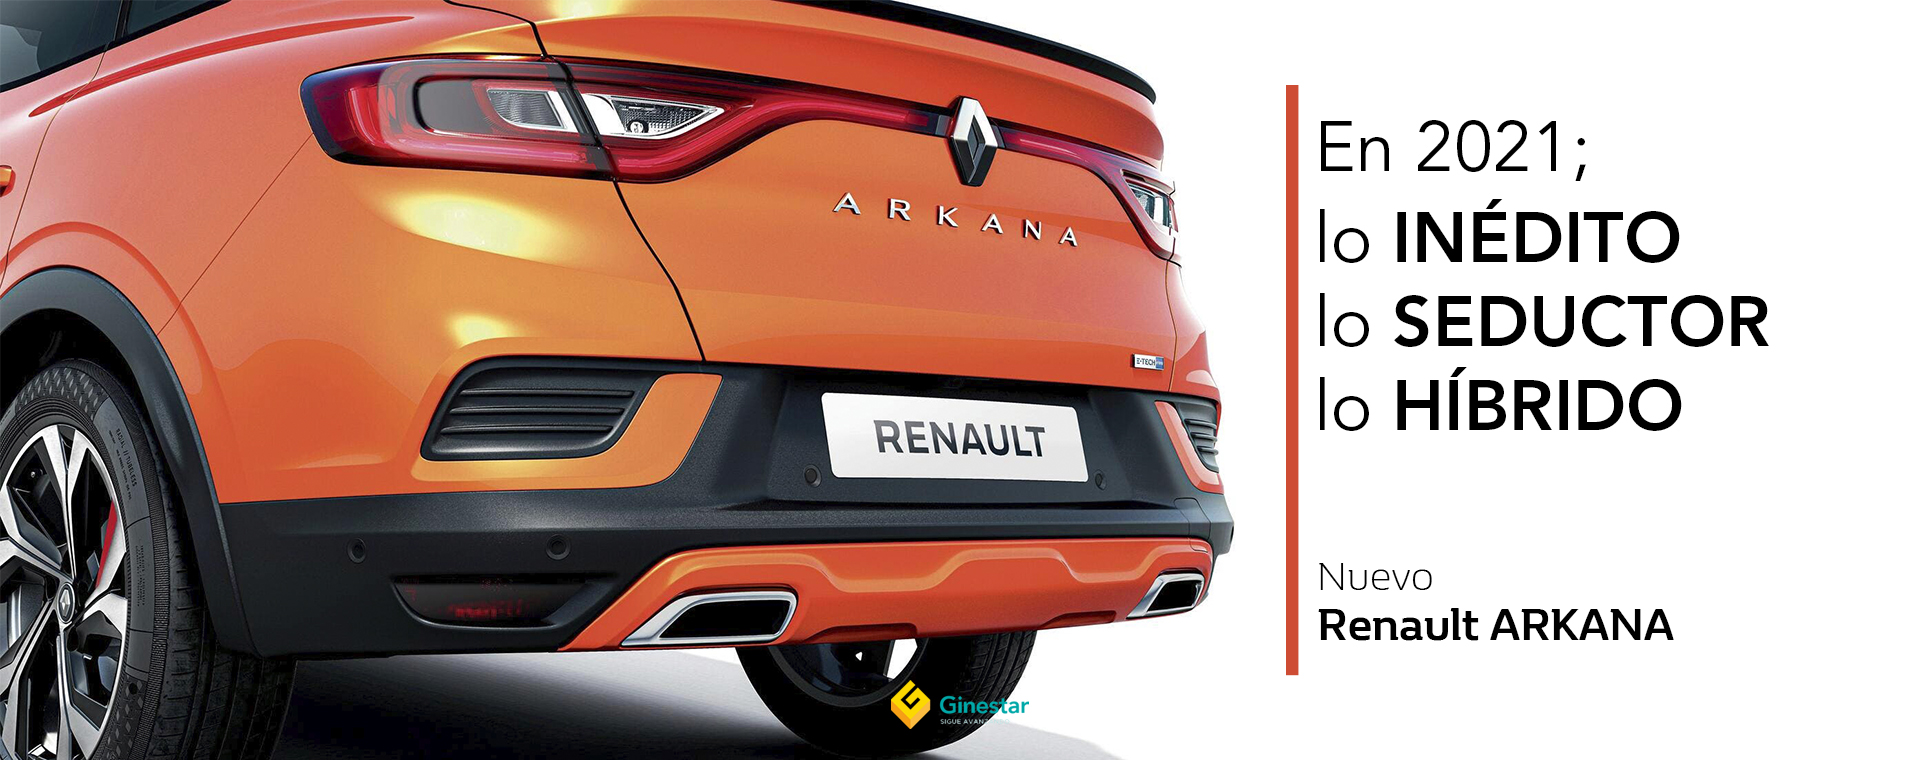 Renault Arkana: Características, fotos e información